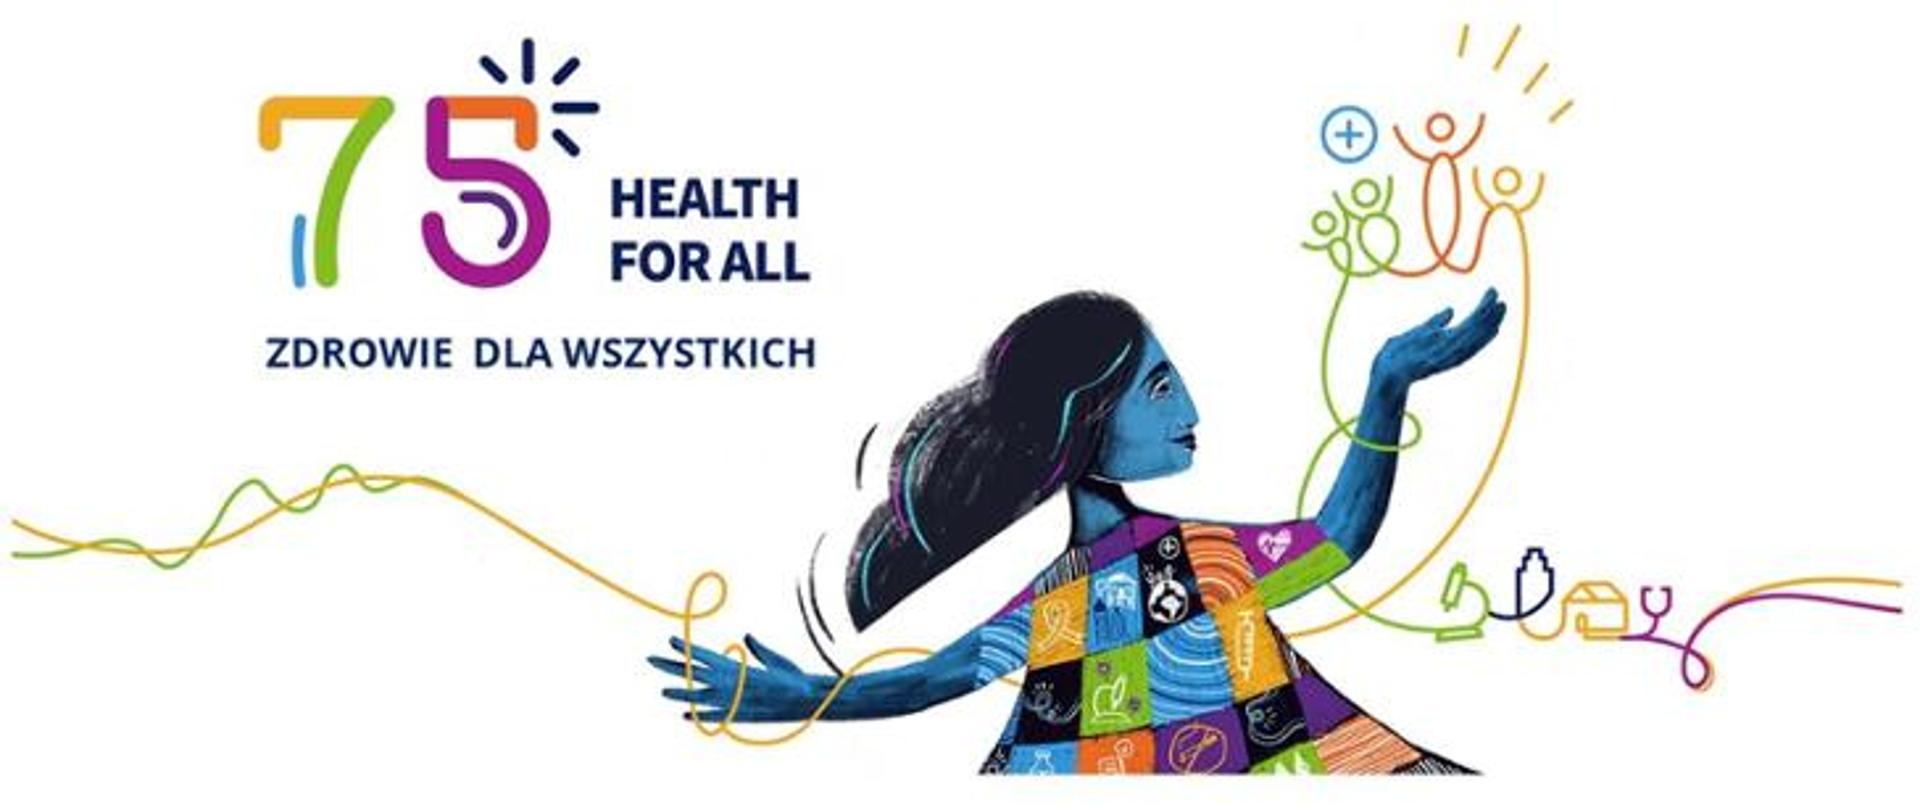 7 kwietnia - Światowy Dzień Zdrowia „Health for all” - „Zdrowie dla wszystkich”